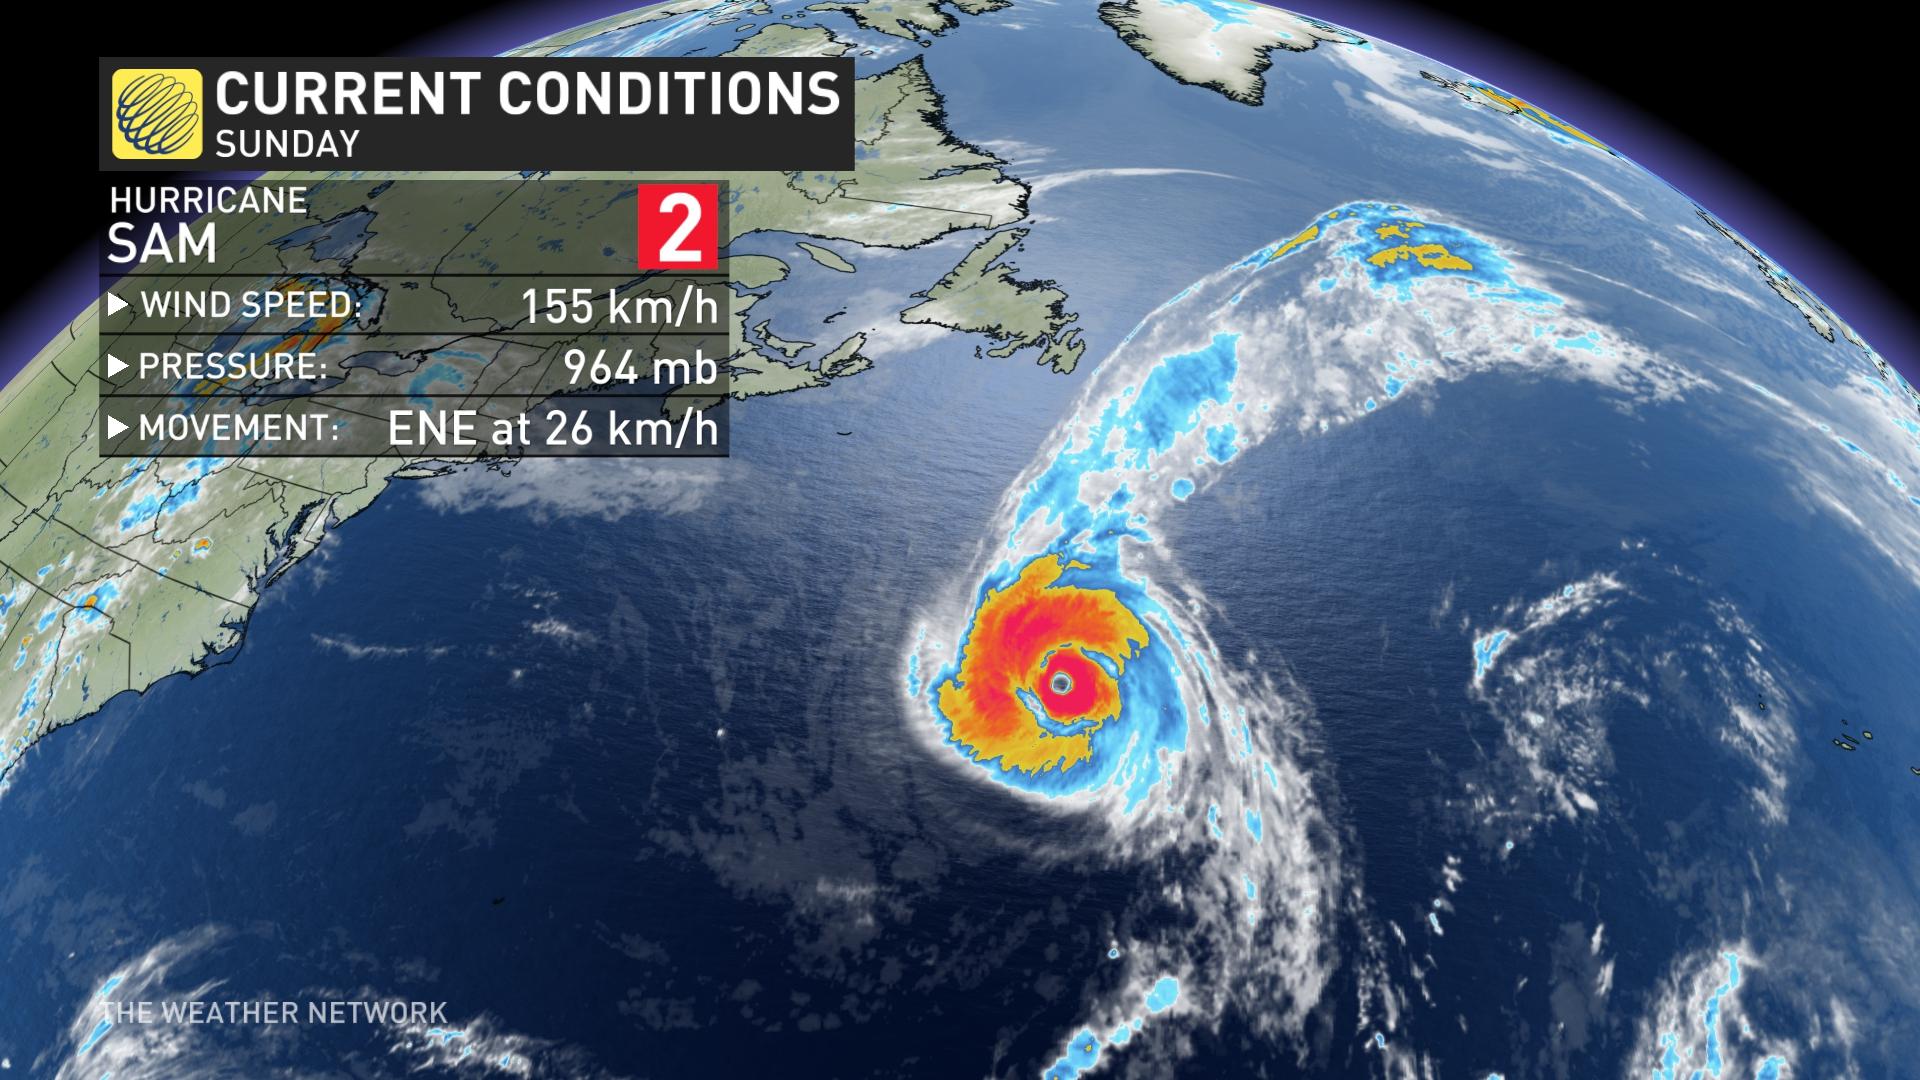 Weather Network: el huracán Sam continúa oscilando, los vientos aumentan y se esperan ráfagas de viento en Terranova